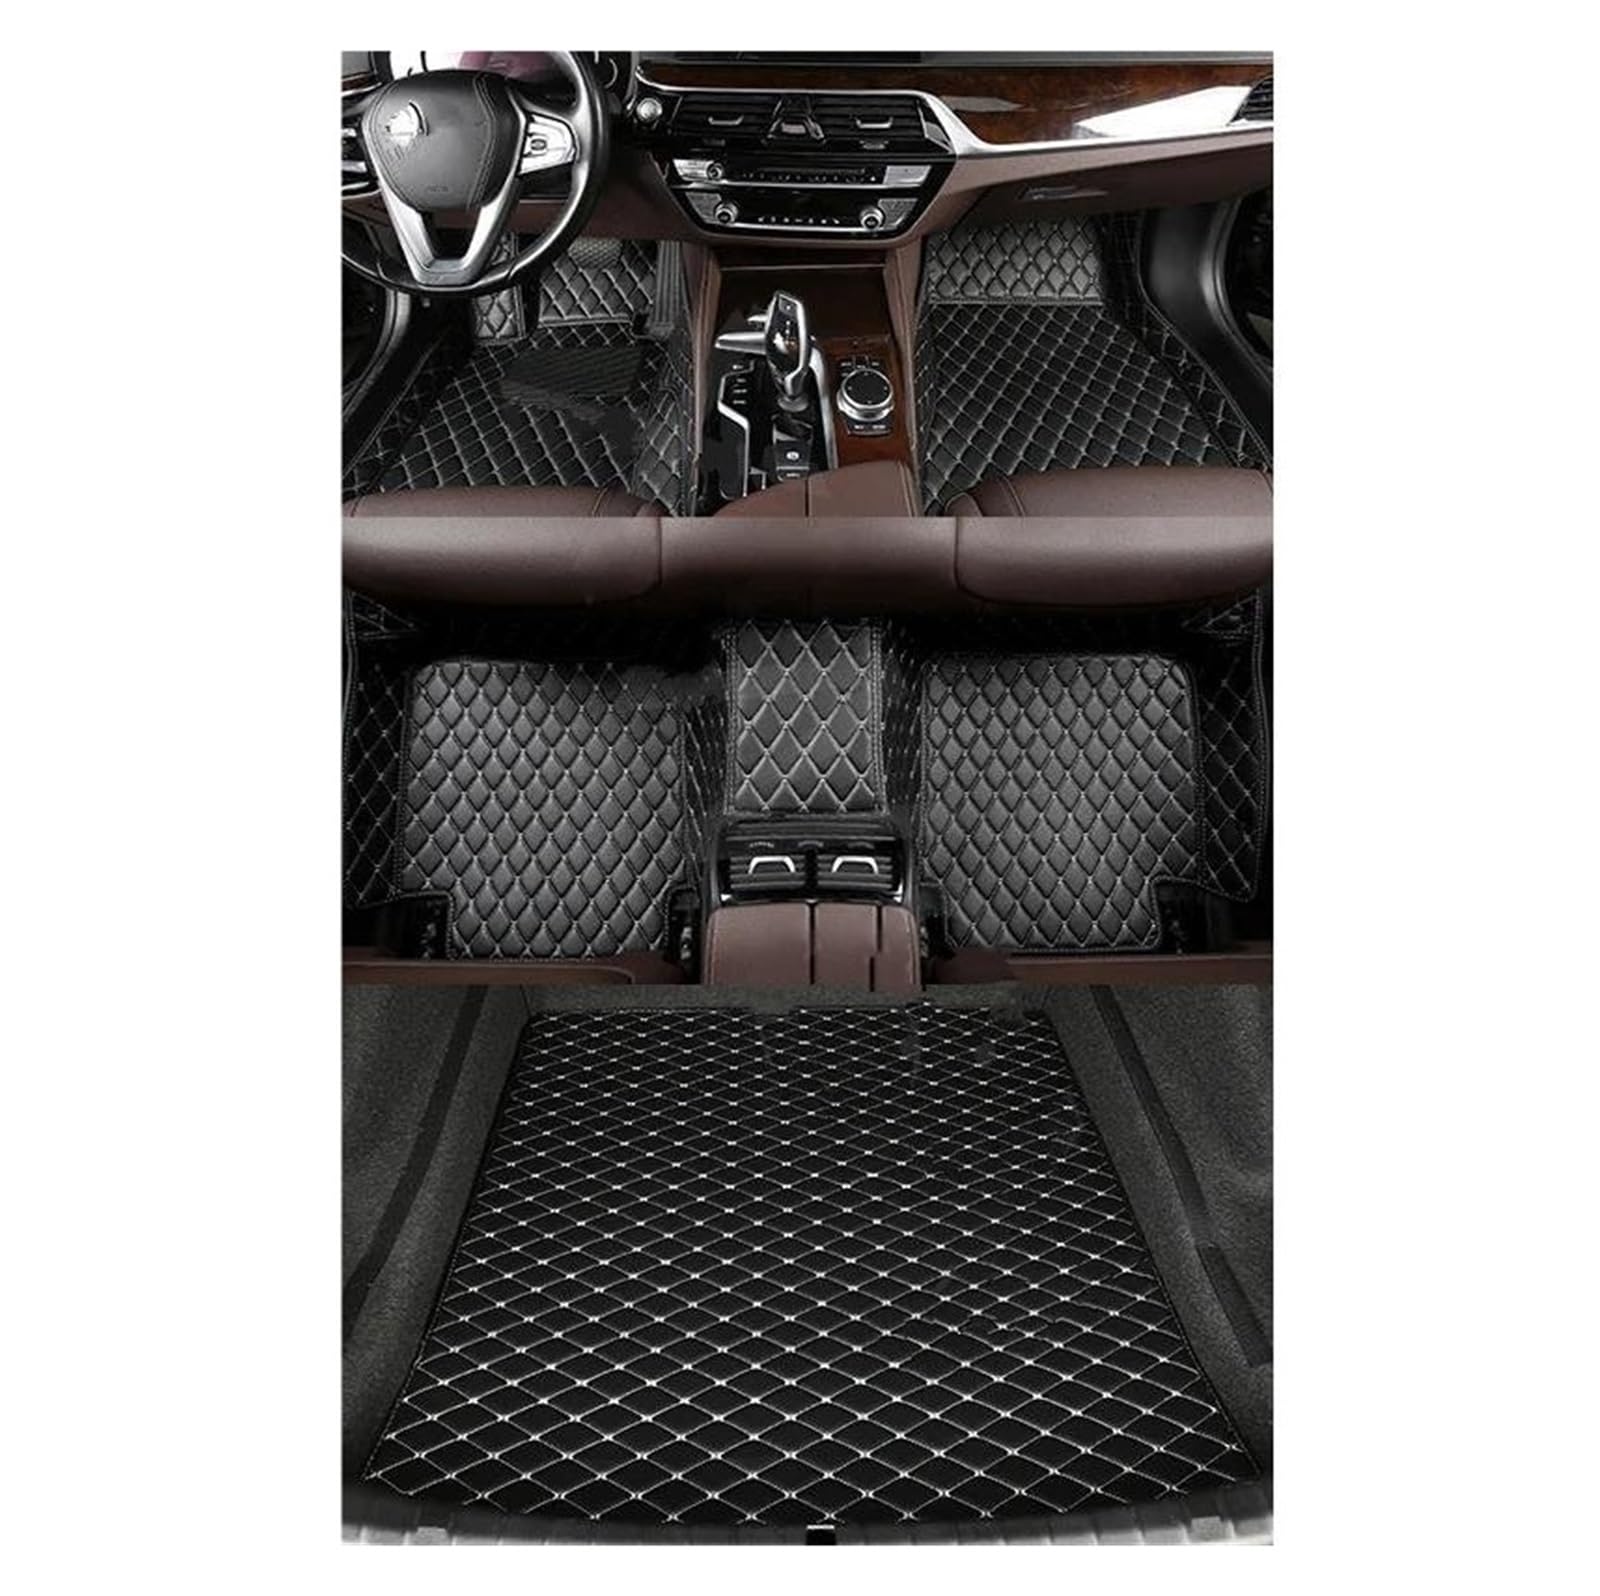 Fußmatten Auto-Bodenmatte Für Ford Für Focus 2018 2019 2020 2021 2022 2023 5-Sitzer-Innenausstattung, Kofferraummatte Autoteppich(Black White) von DZSQOSJB